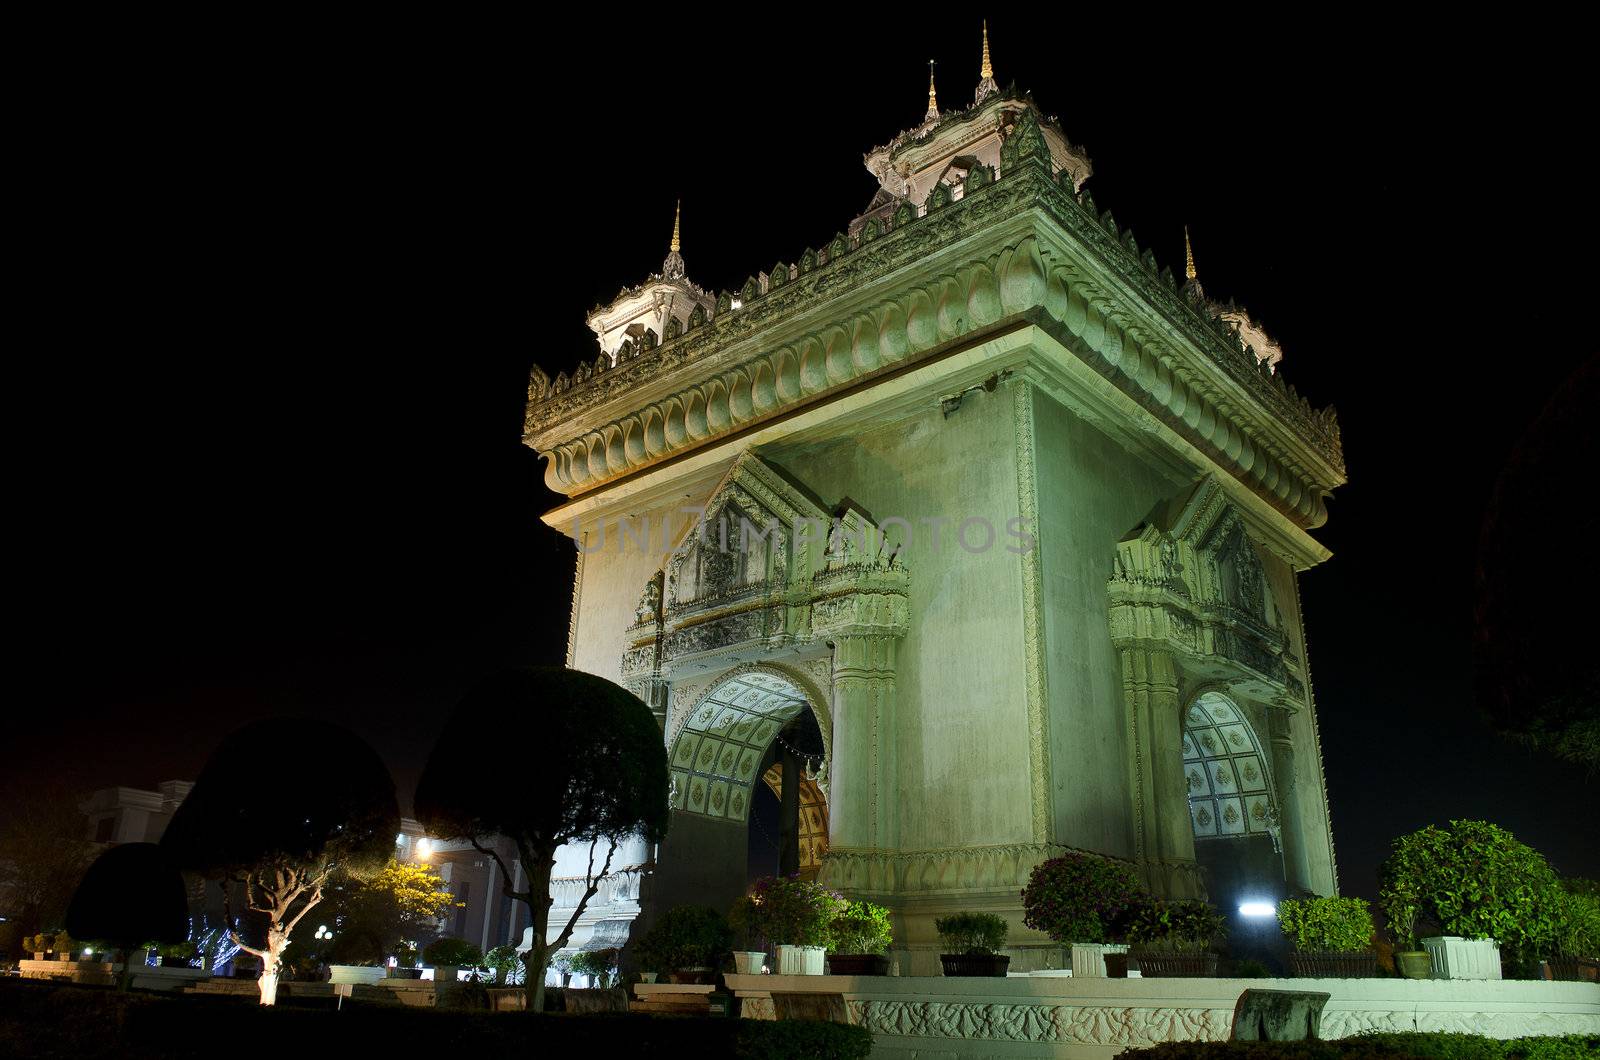 patuxai arch at night in vientiane, laos